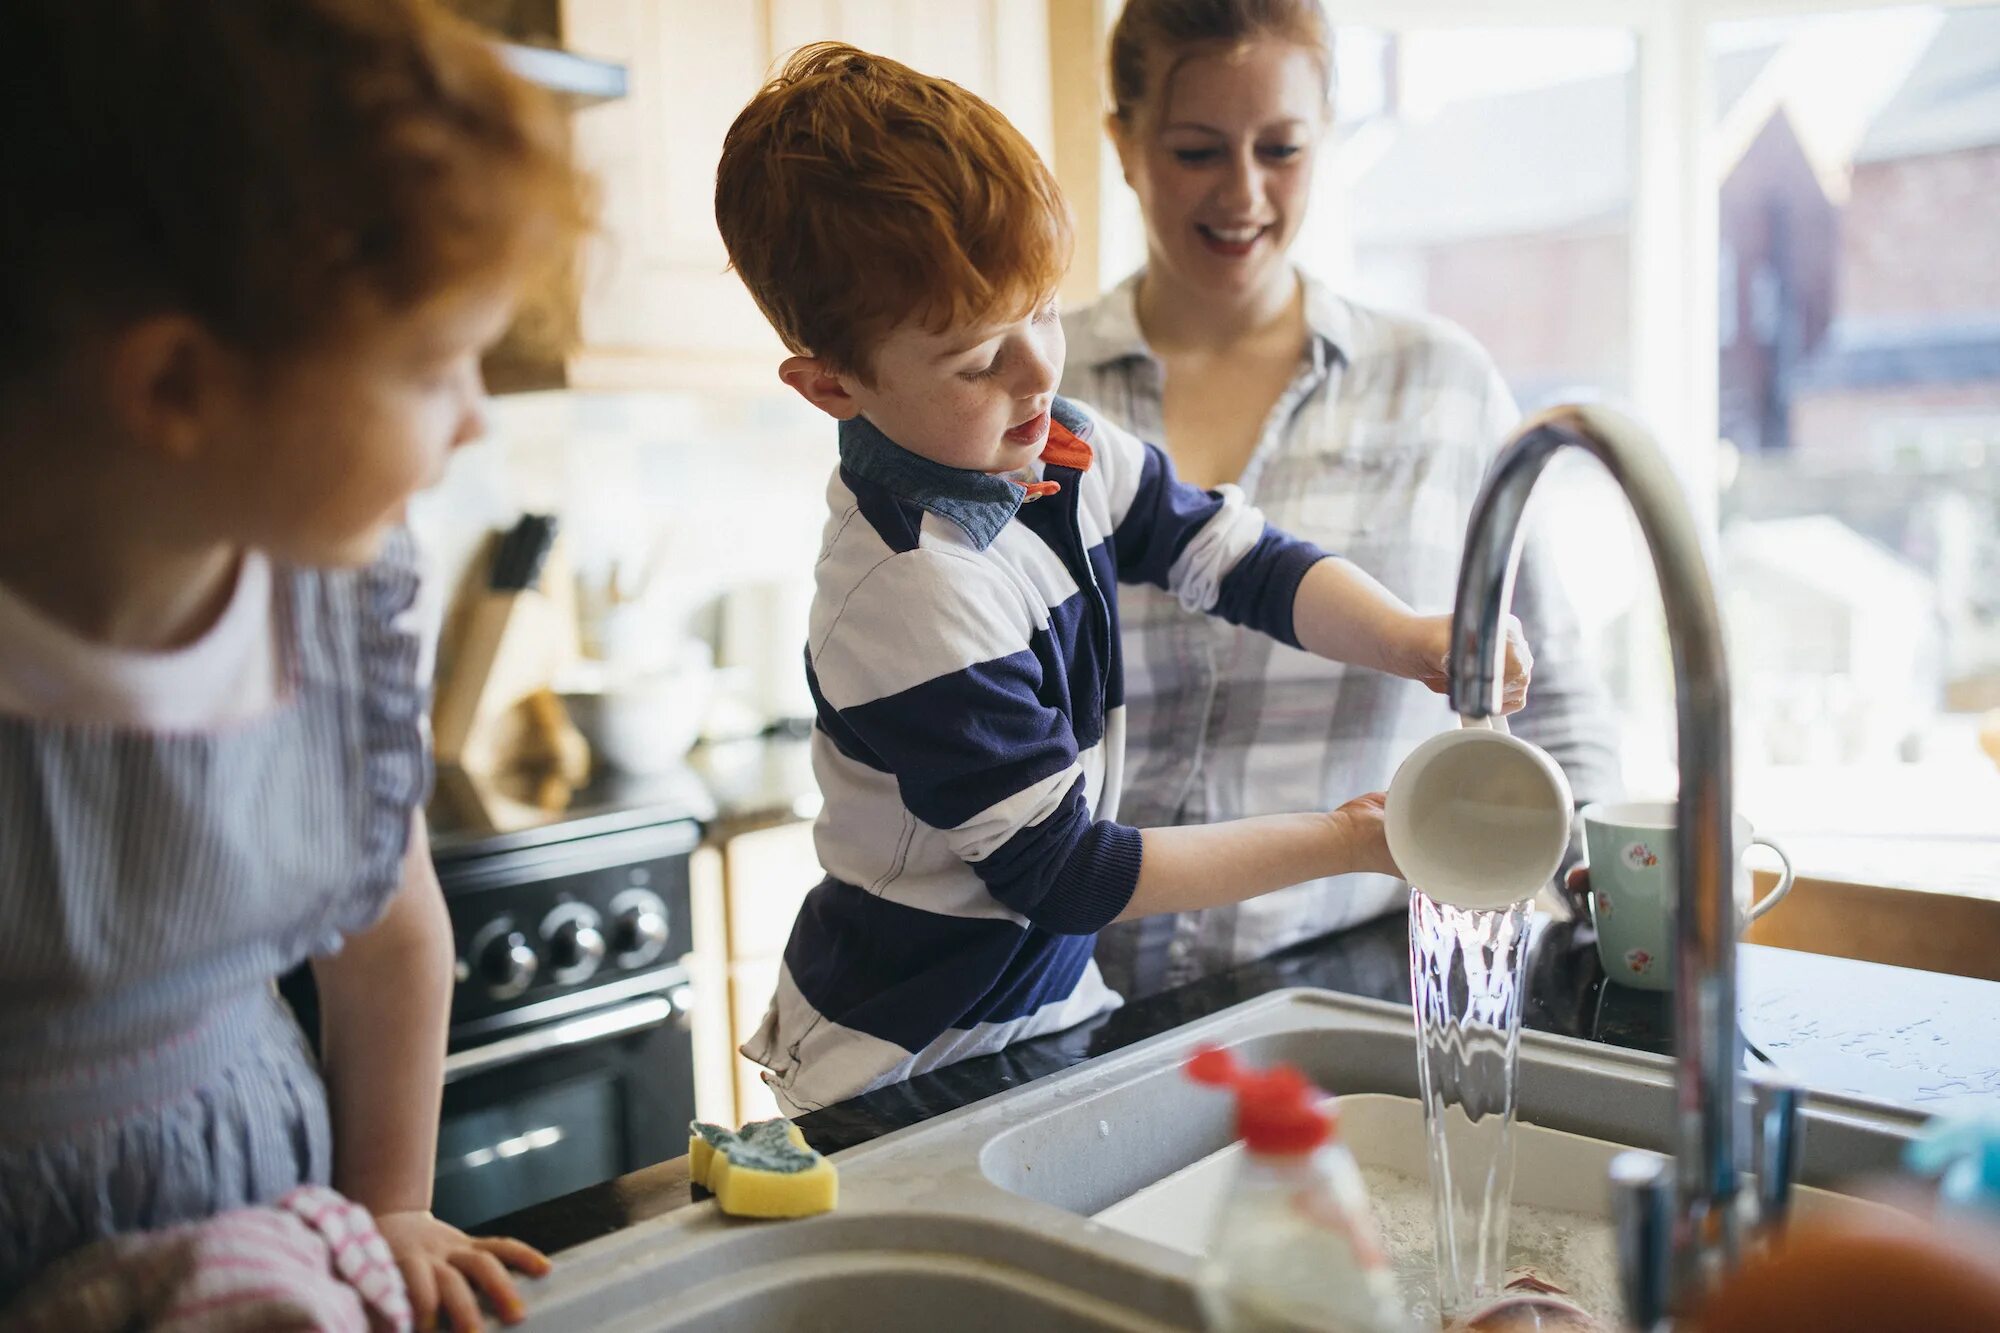 They do the washing up. Дети помогают. Ребенок помогает по дому. Дети помогают в быту. Фото ребенок занимается домашними делами.